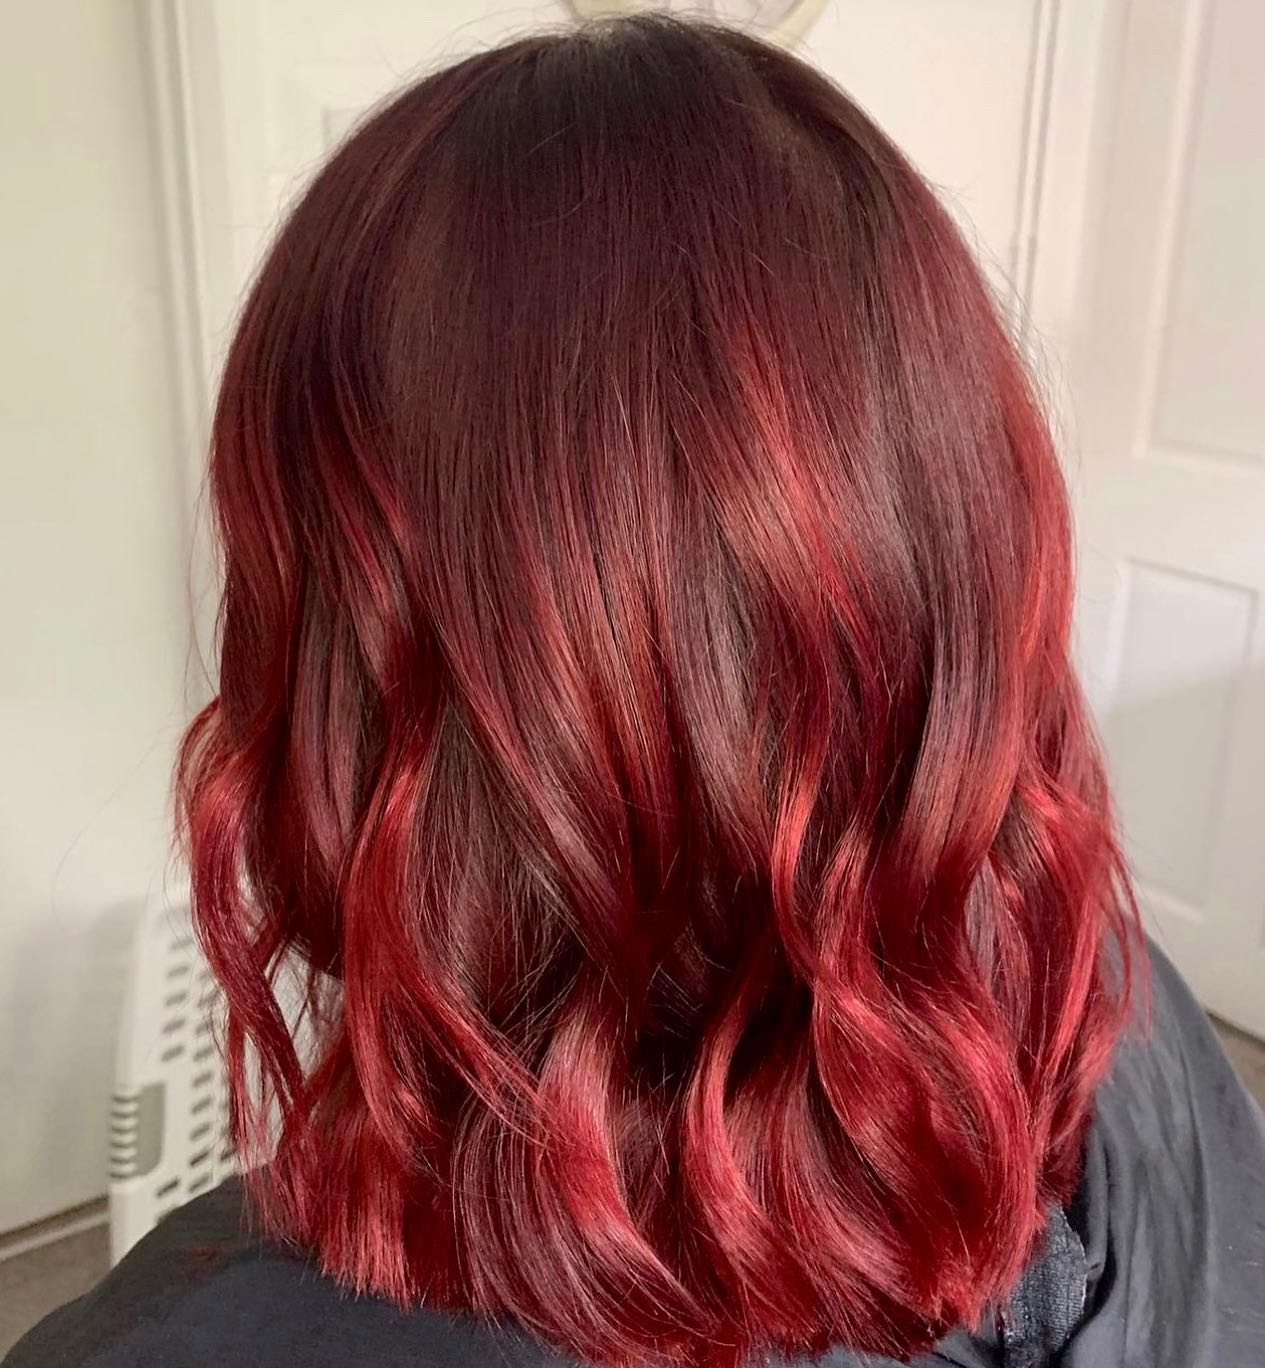 bright red hair color 180 Bright Red Hair Color | Bright red hair color for dark hair | Bright red hair color ideas Bright Red Hair Color